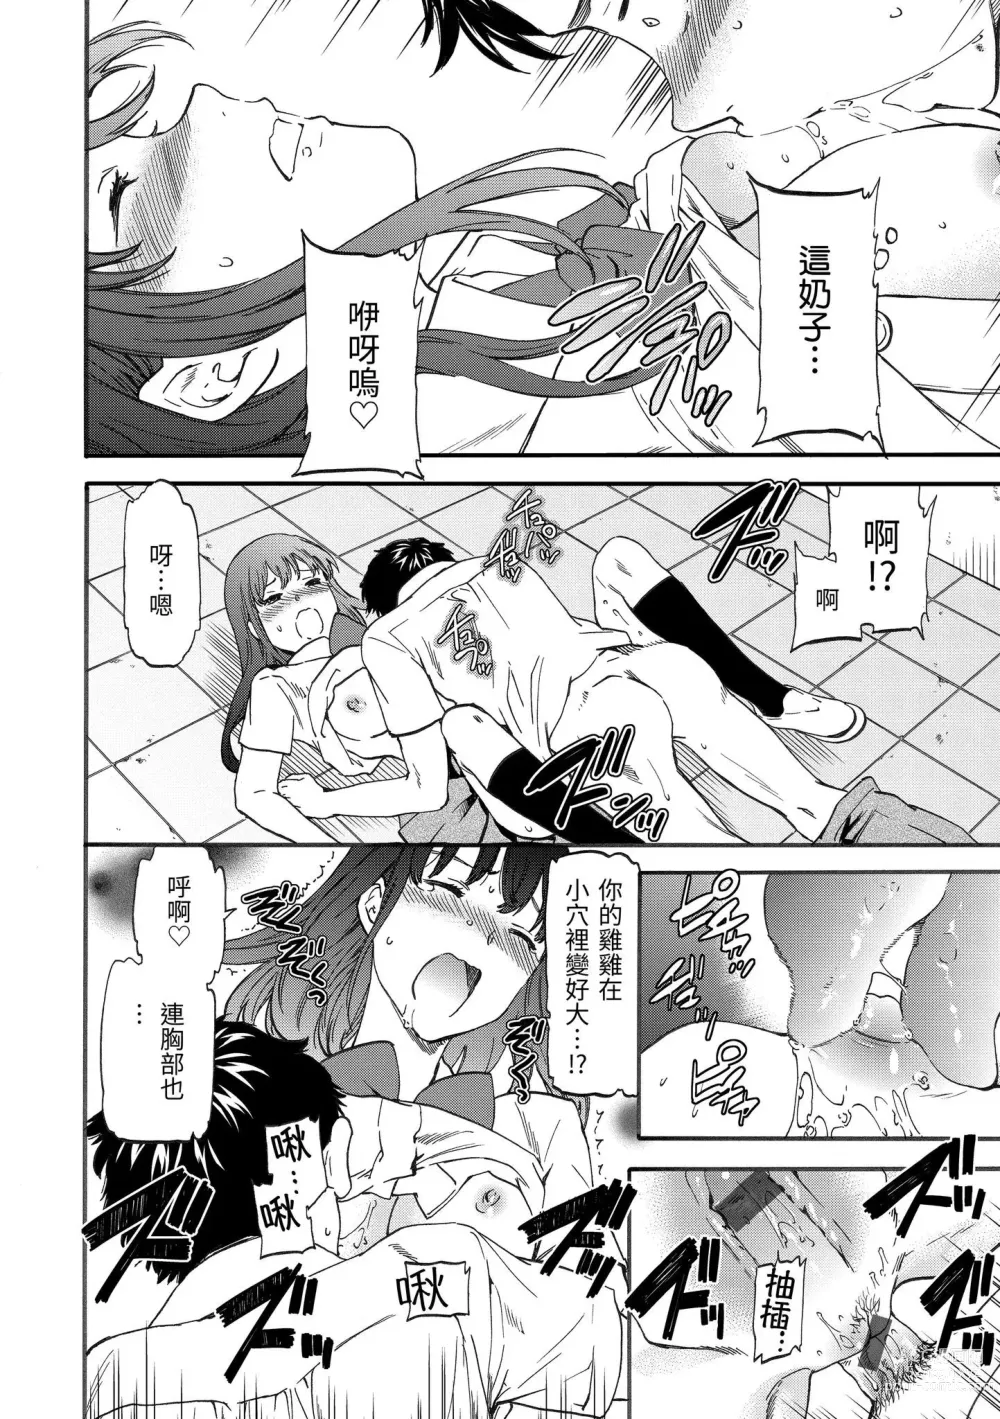 Page 19 of manga 柔情泥濘